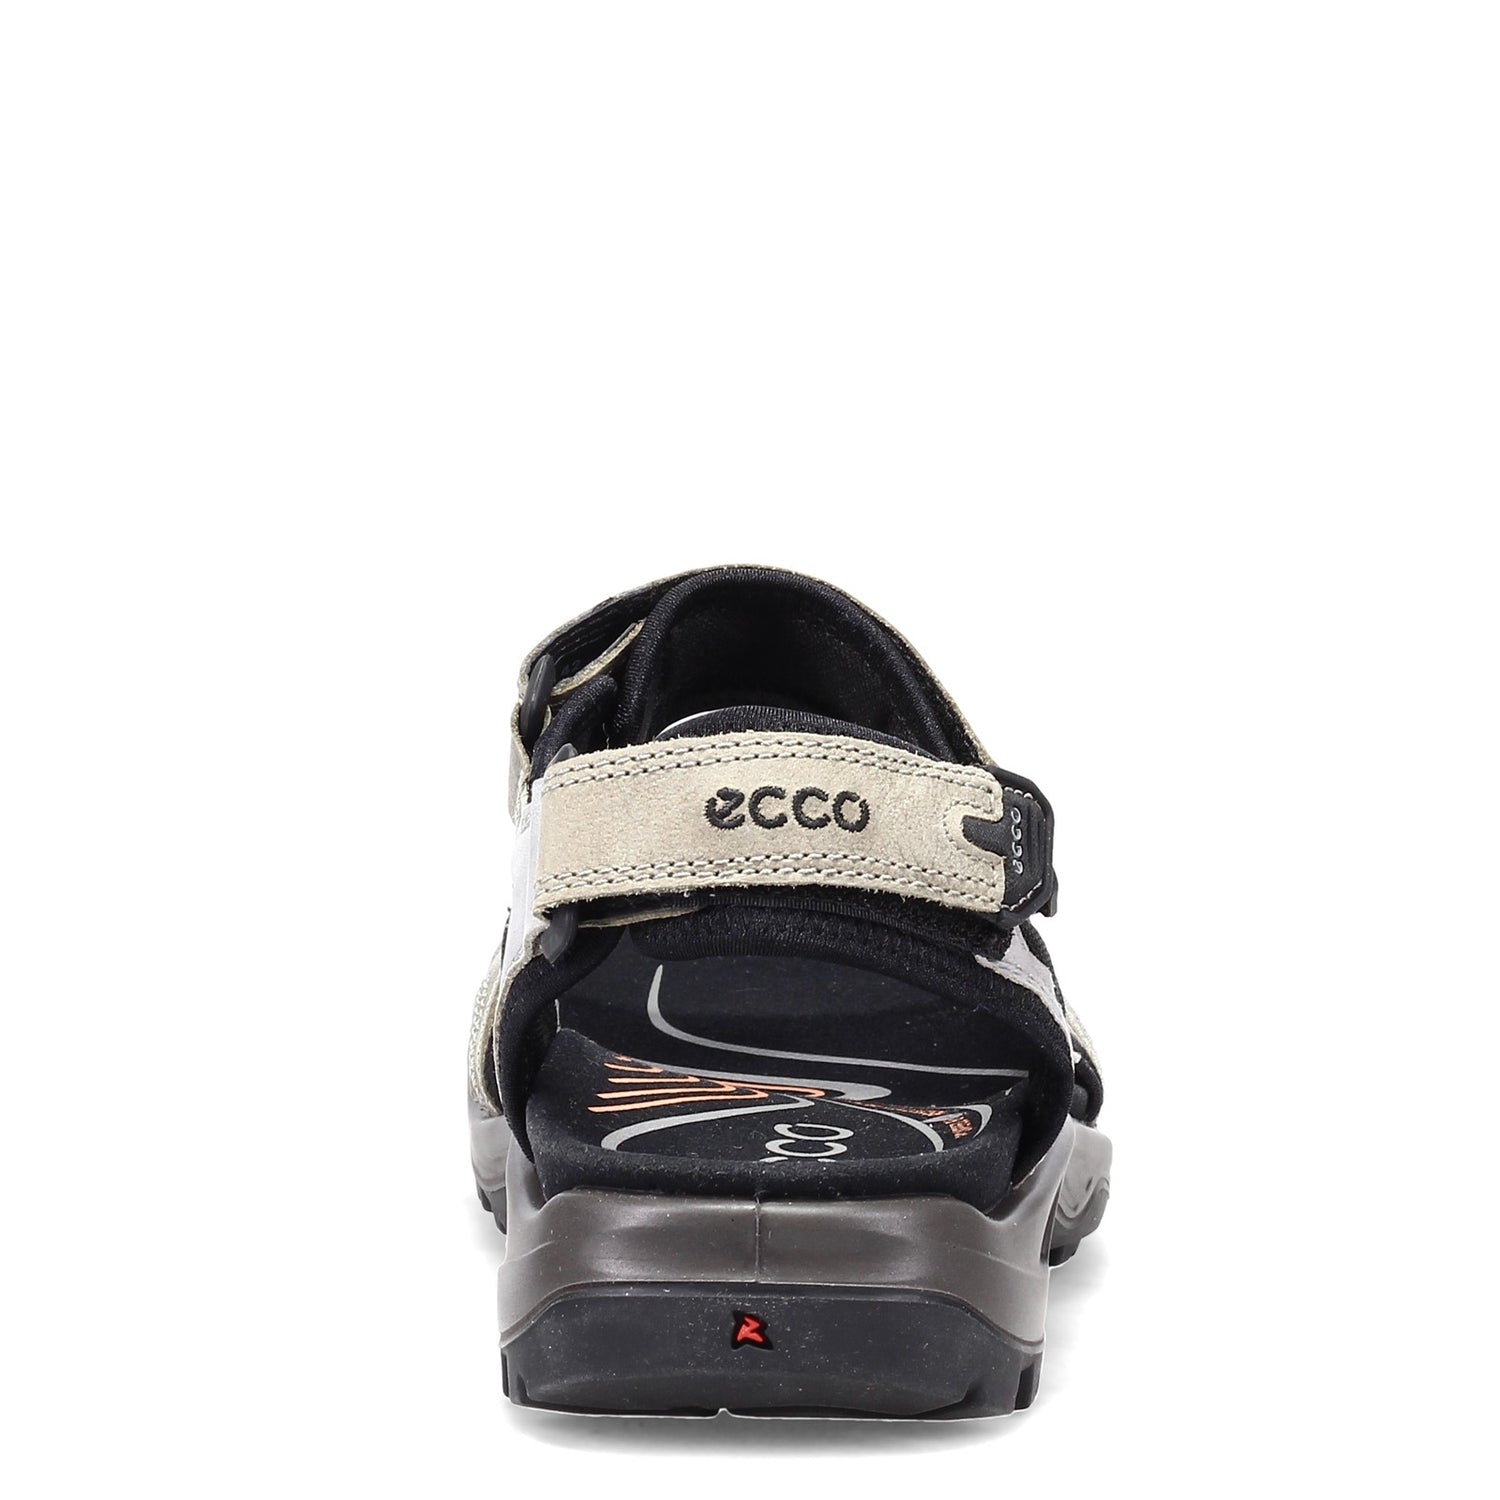 Peltz Shoes  Men's Ecco Yucatan Sandal GREY MULTI 069564-51693